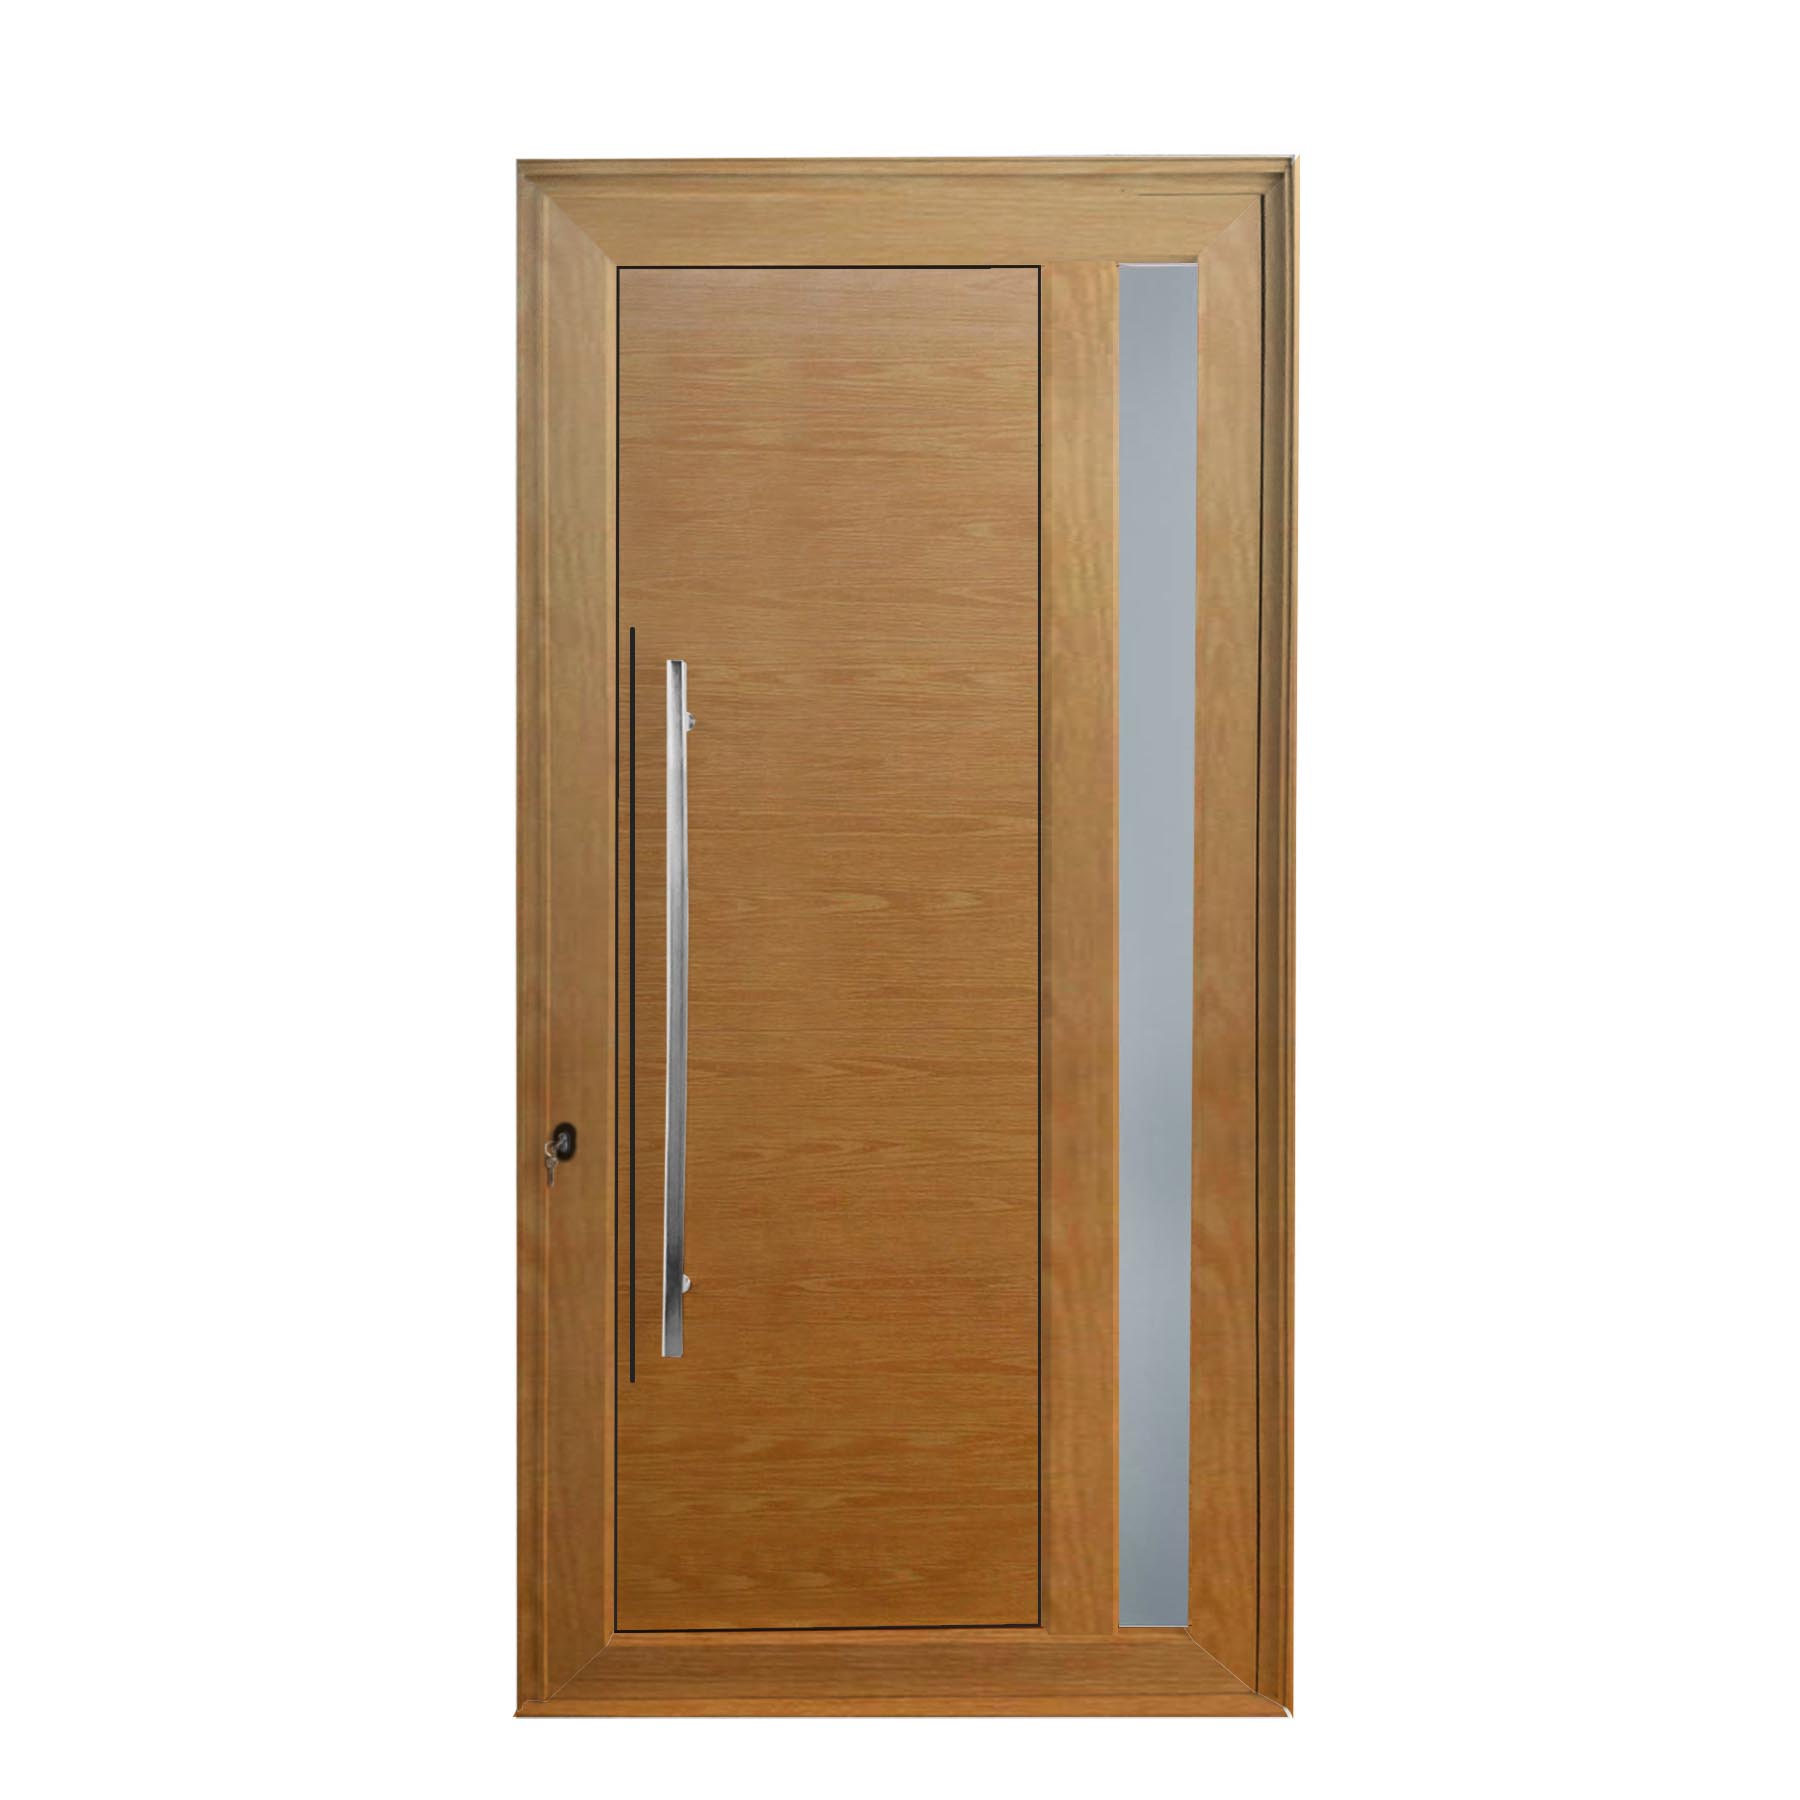 Porta de abrir 1 folha lambri cor madeira com vidro 98 x 215 com puxador inox de 100cm - fechadura multiponto ( lado direito) - Sociale